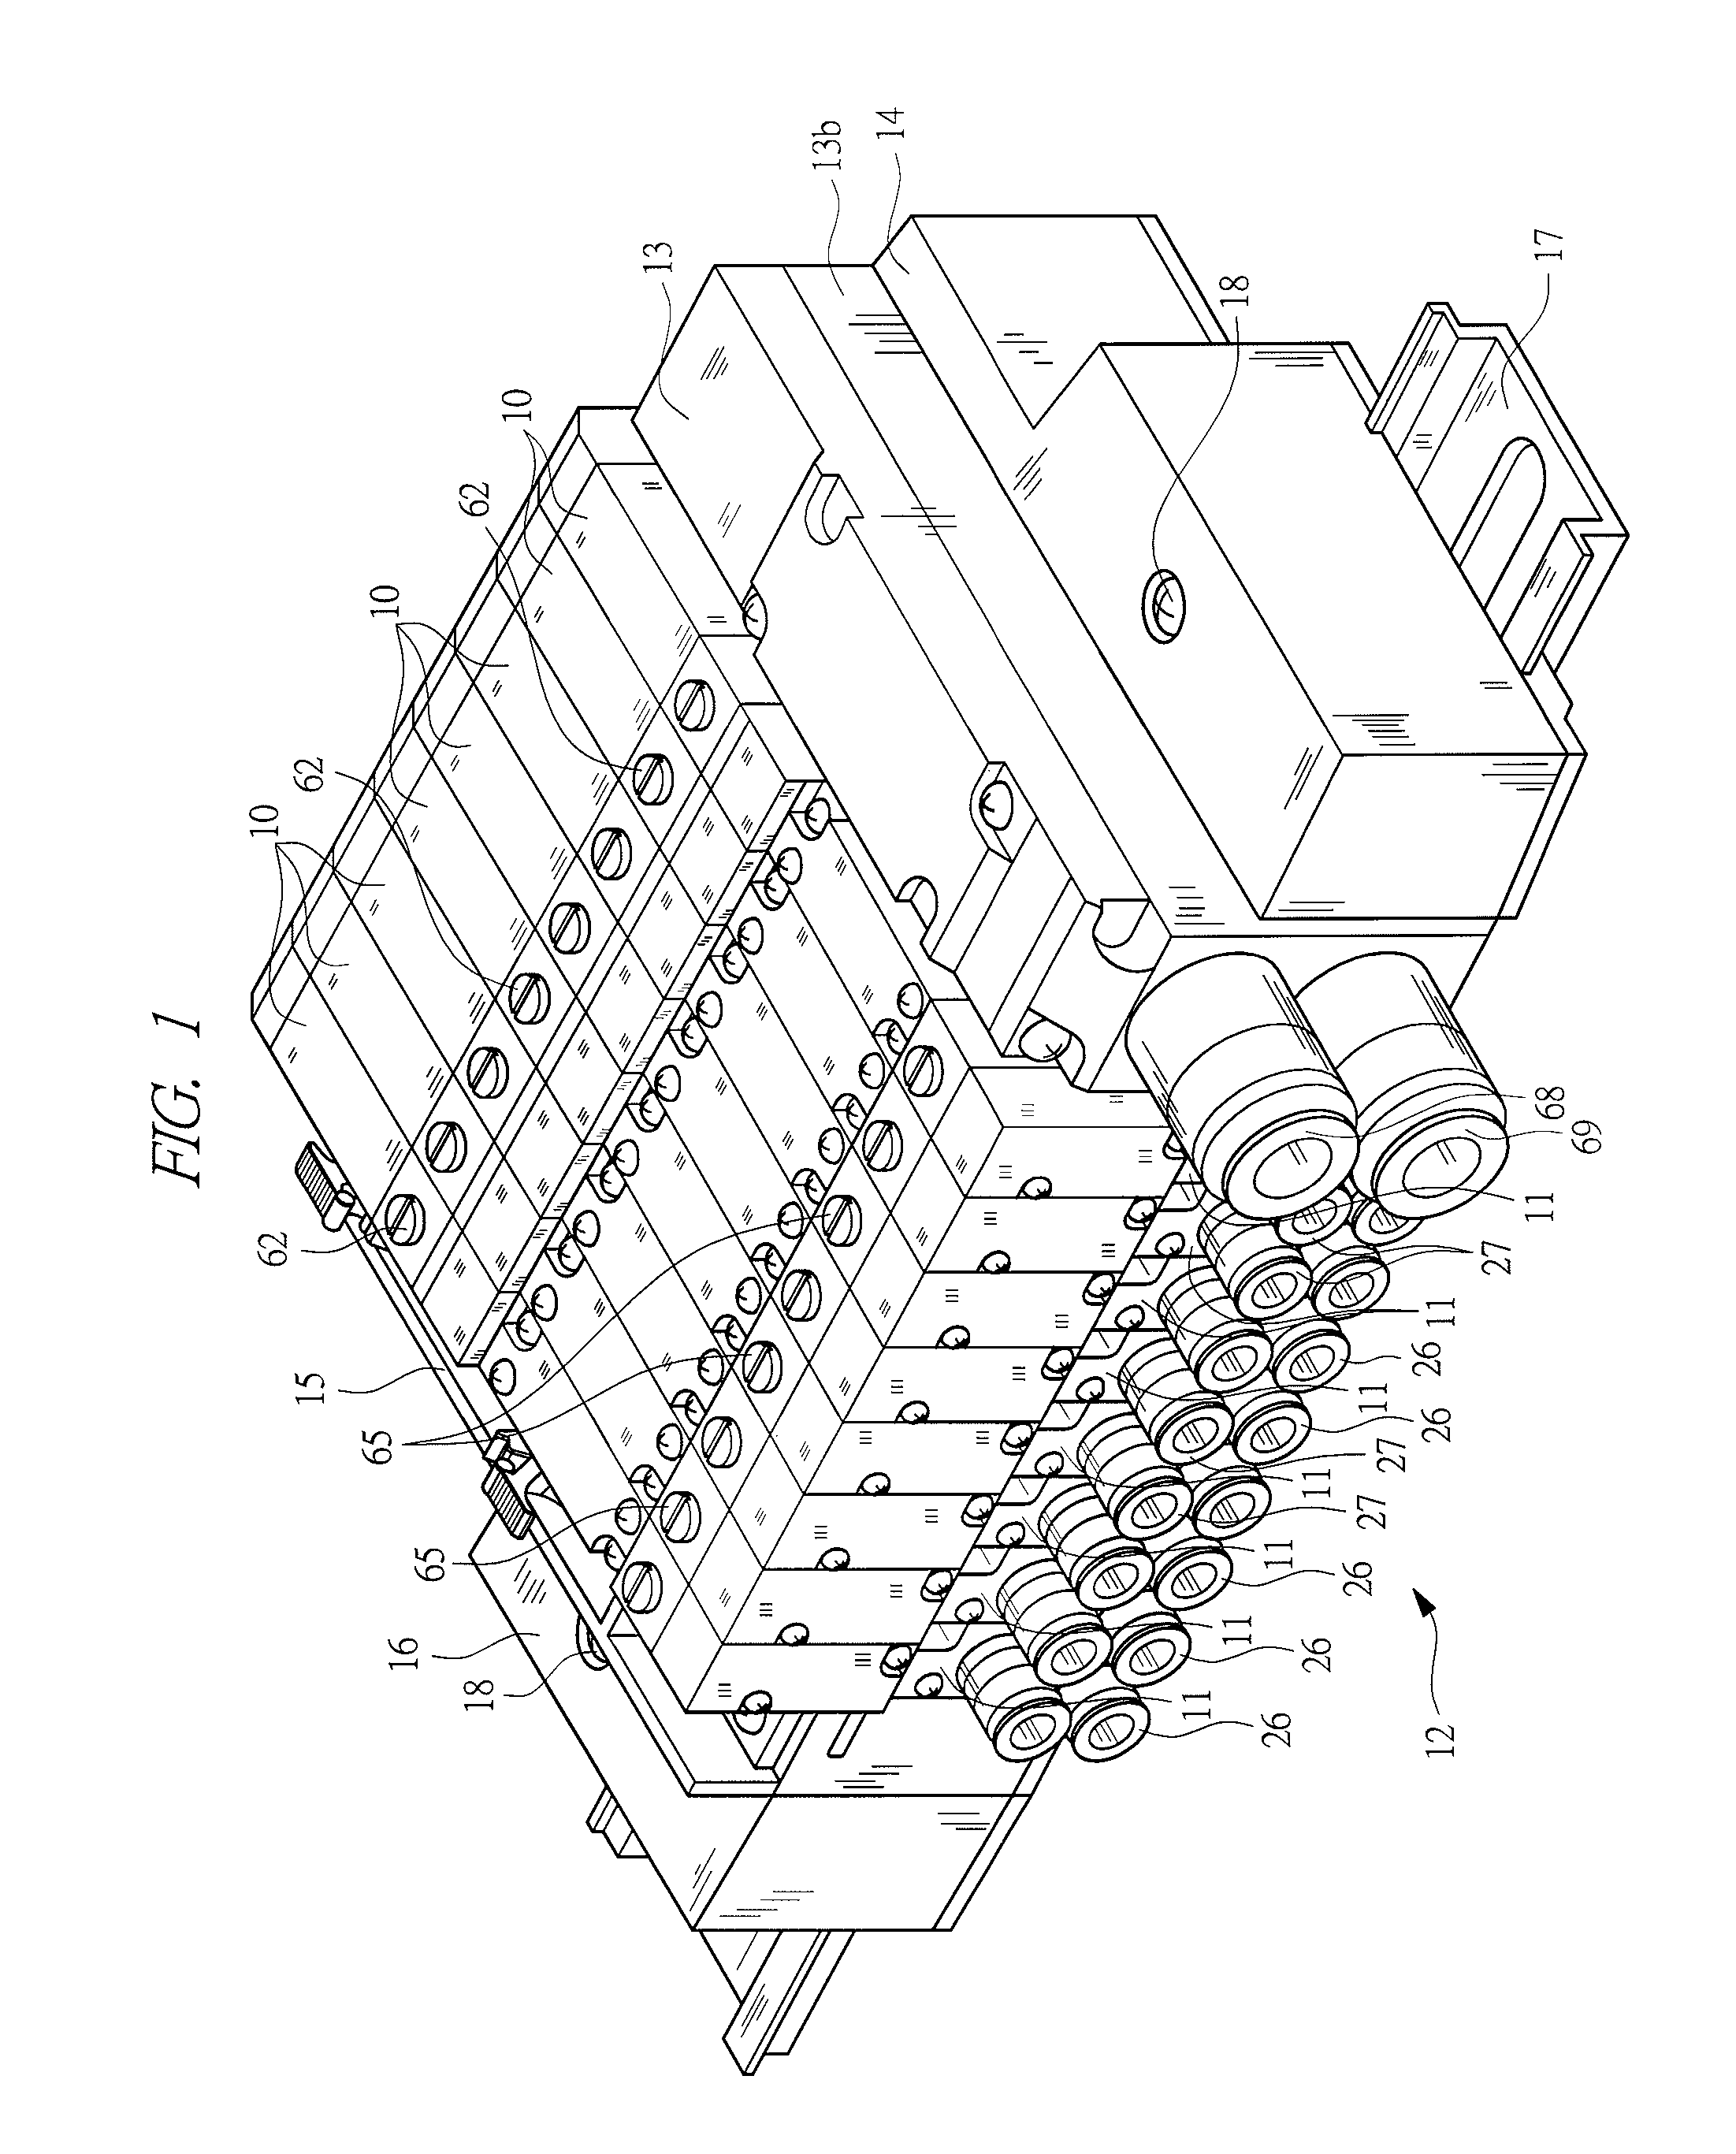 Manifold solenoid valve